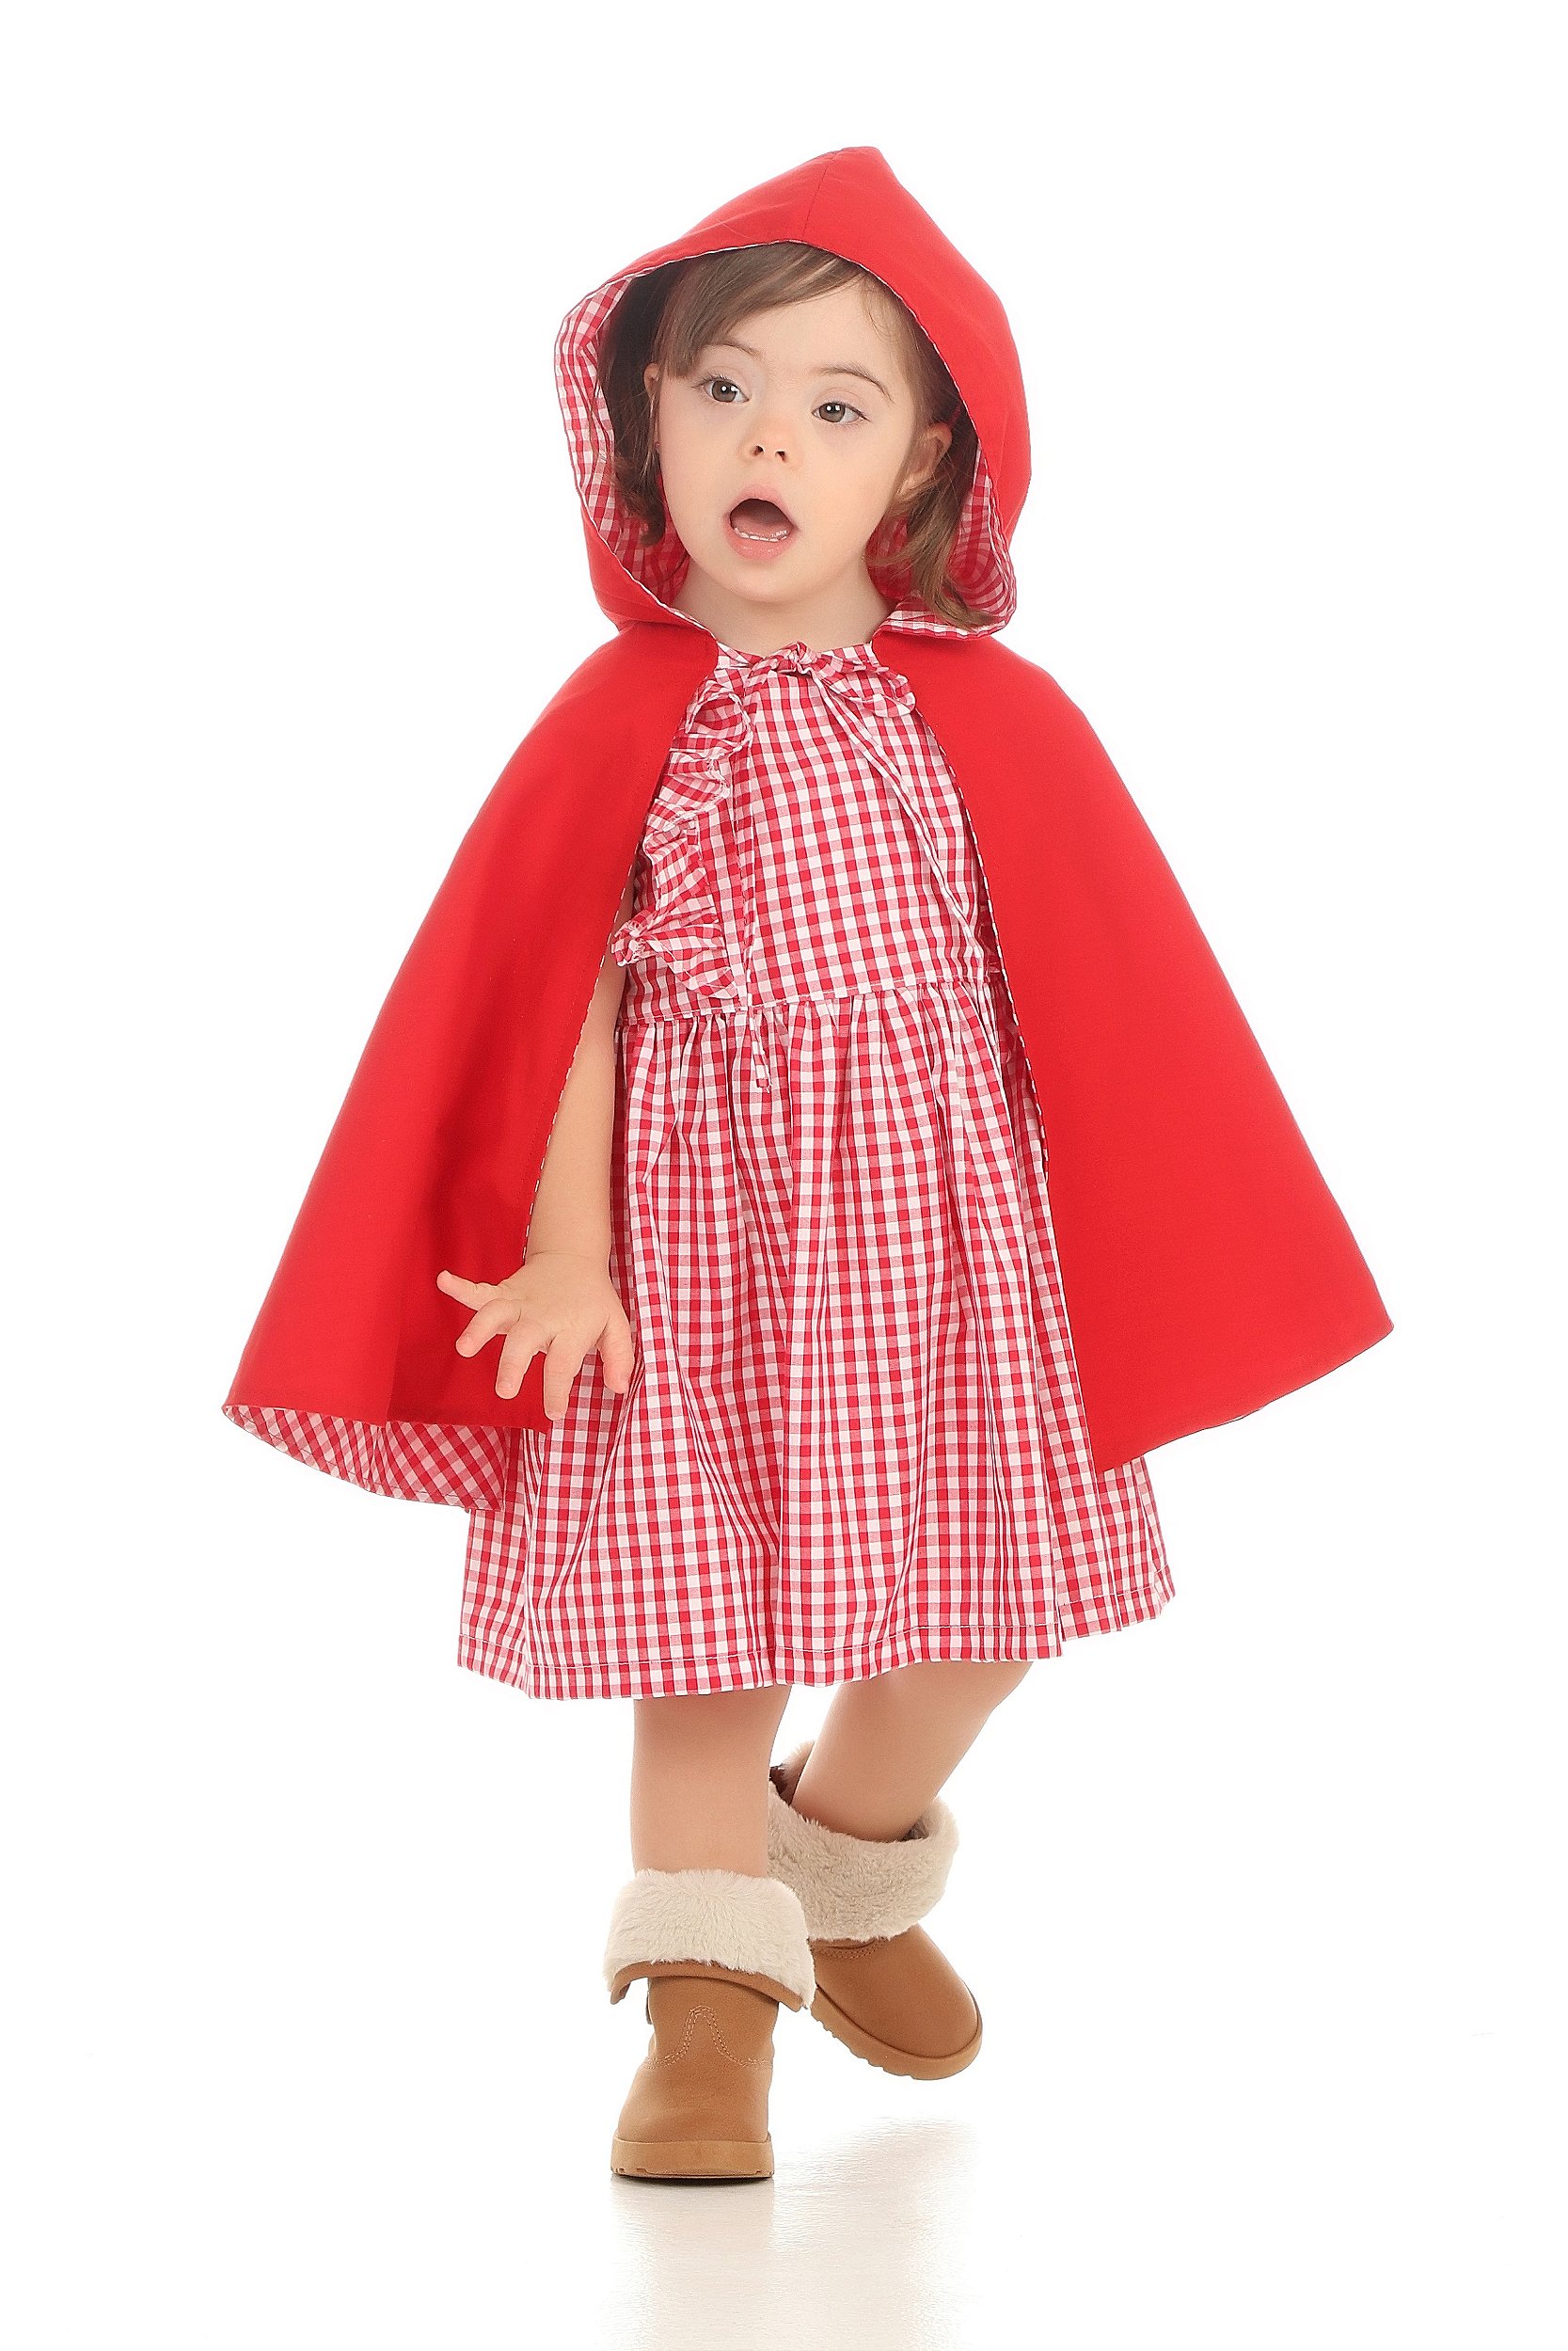 Roupinha de Boneca - Vestido de Chapelzinho Vermelho